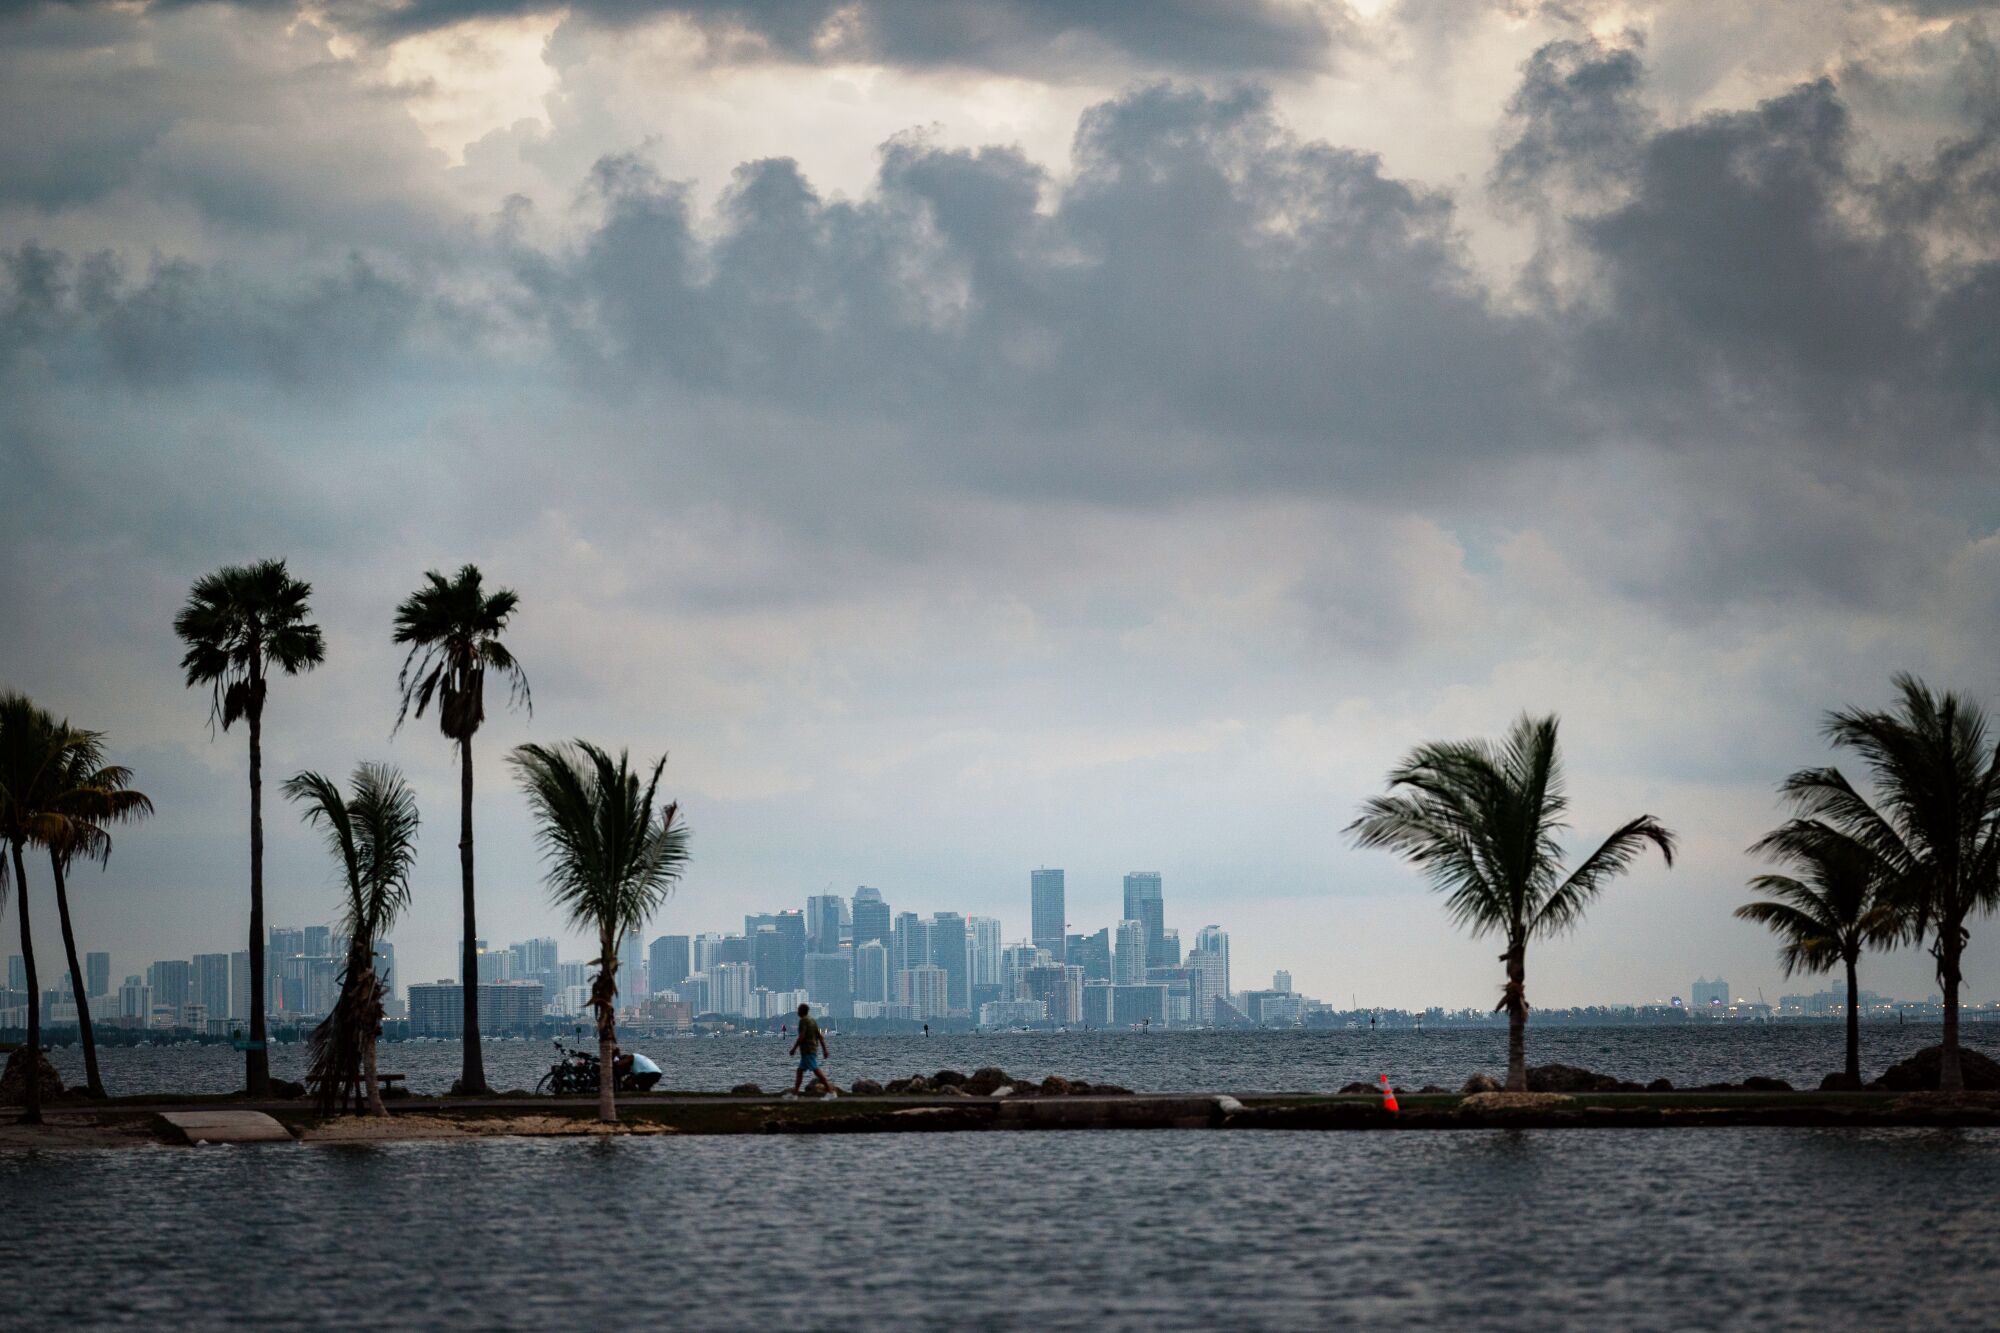 Una persona solitaria camina sobre una delgada franja de tierra con palmeras rodeadas de agua.  El horizonte de Miami está en el horizonte.